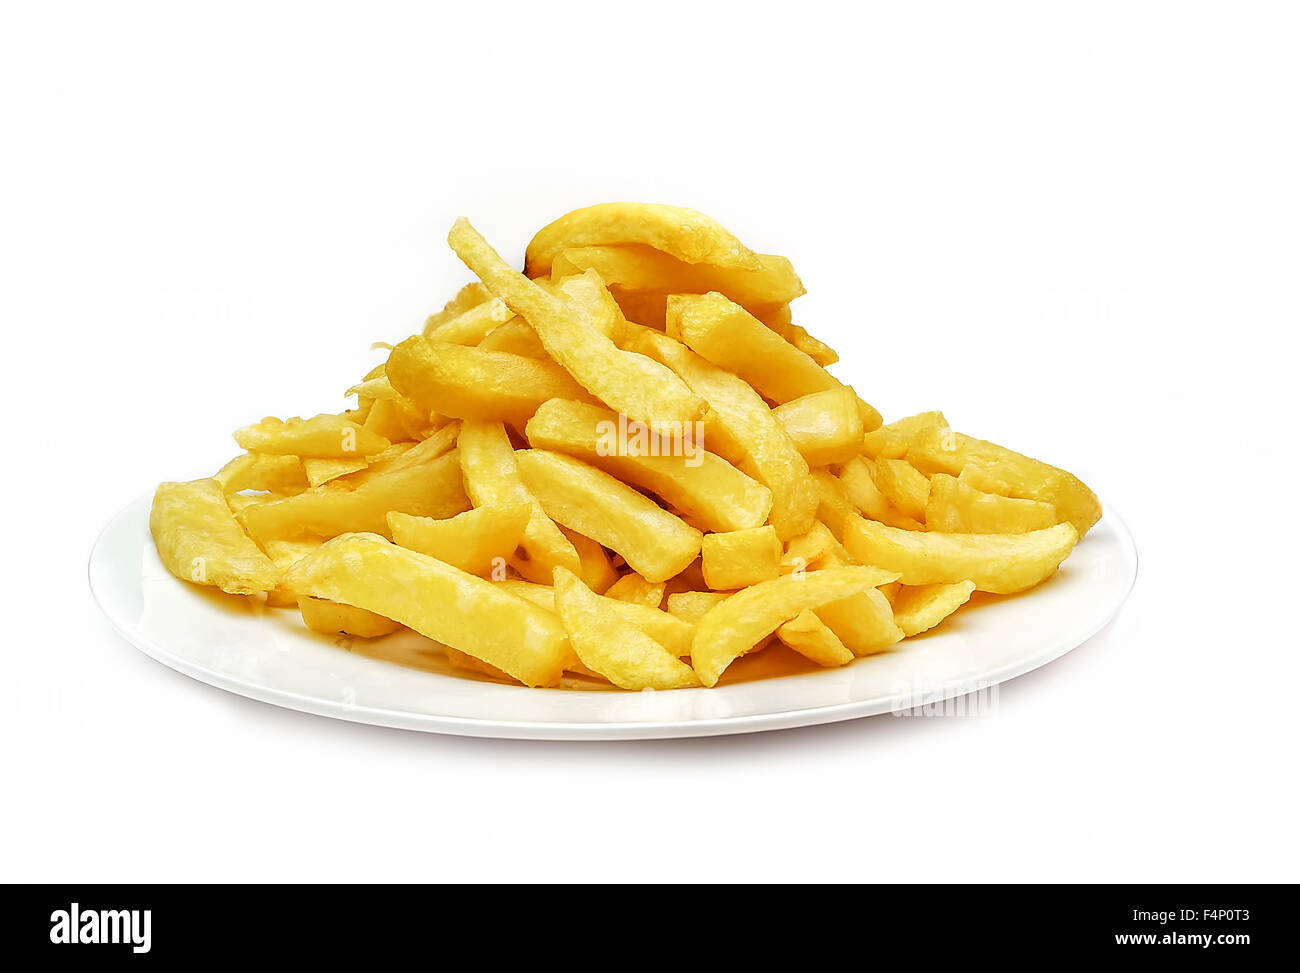 Kartoffelchips auf weißem Teller Studioaufnahme Stockfoto